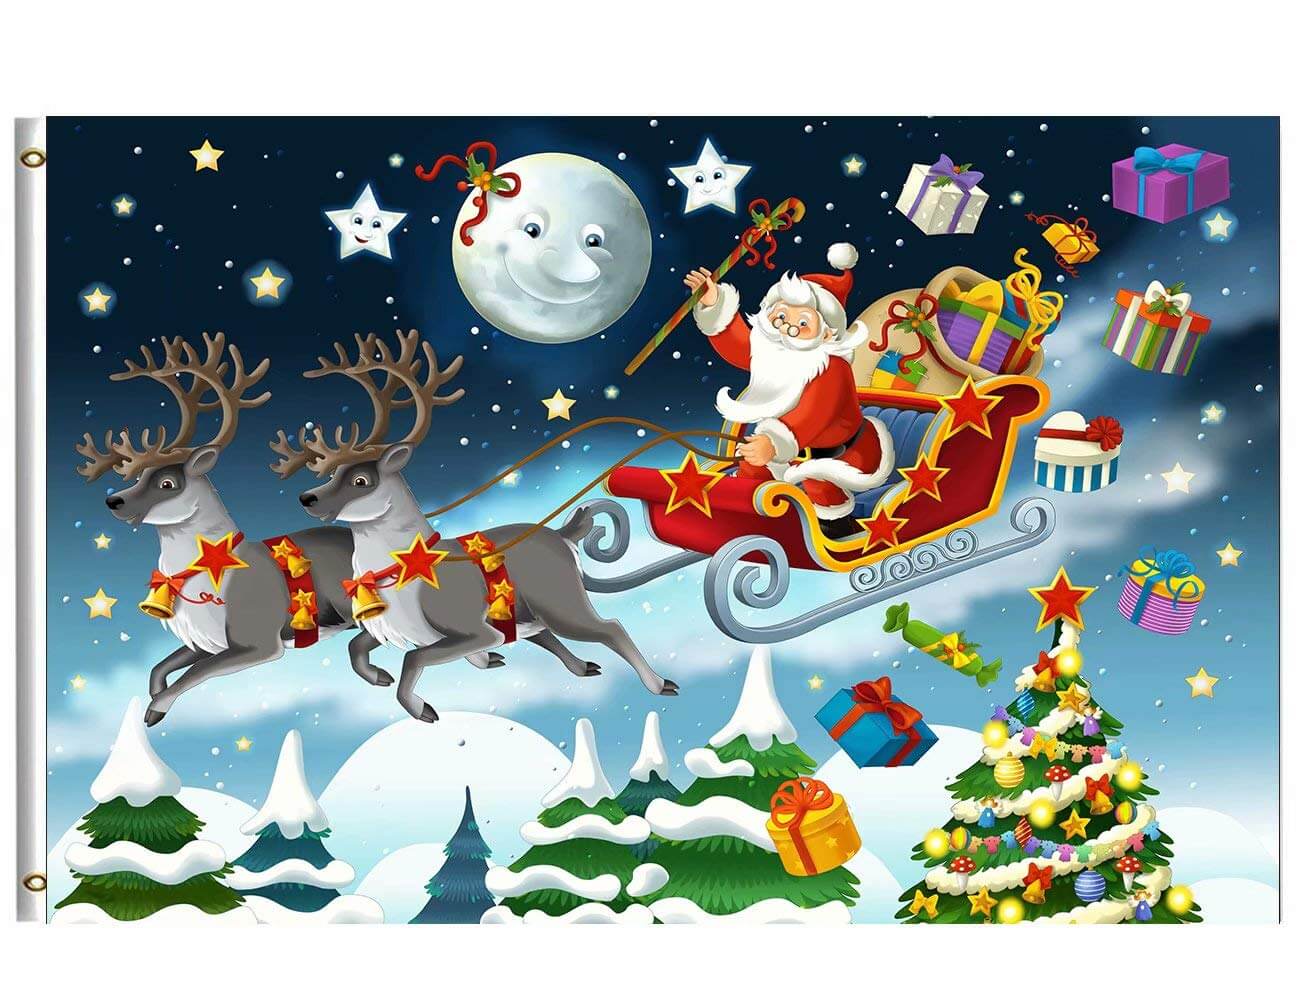 सितारों ने आसमान से सलाम भेजा है Merry Christmas 2020-2021